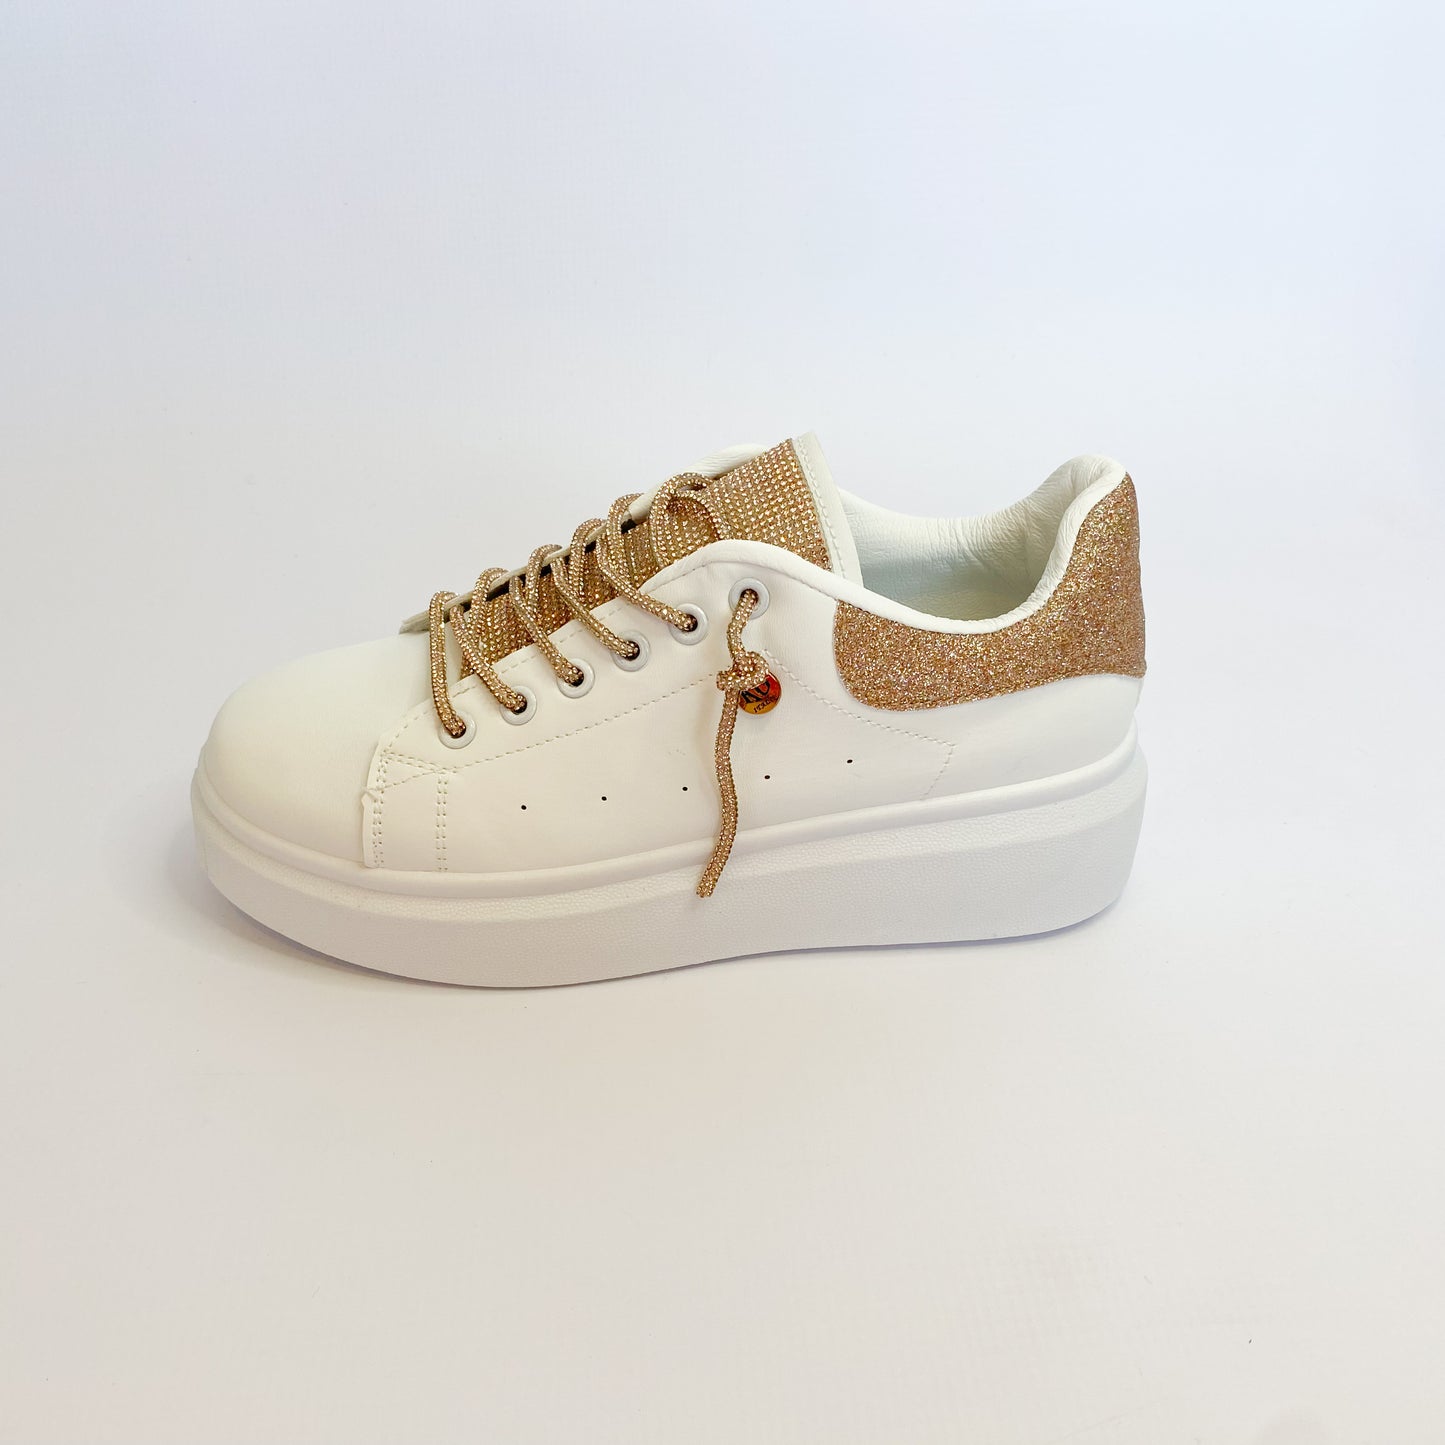 KG white / rosegold glitter sneaker